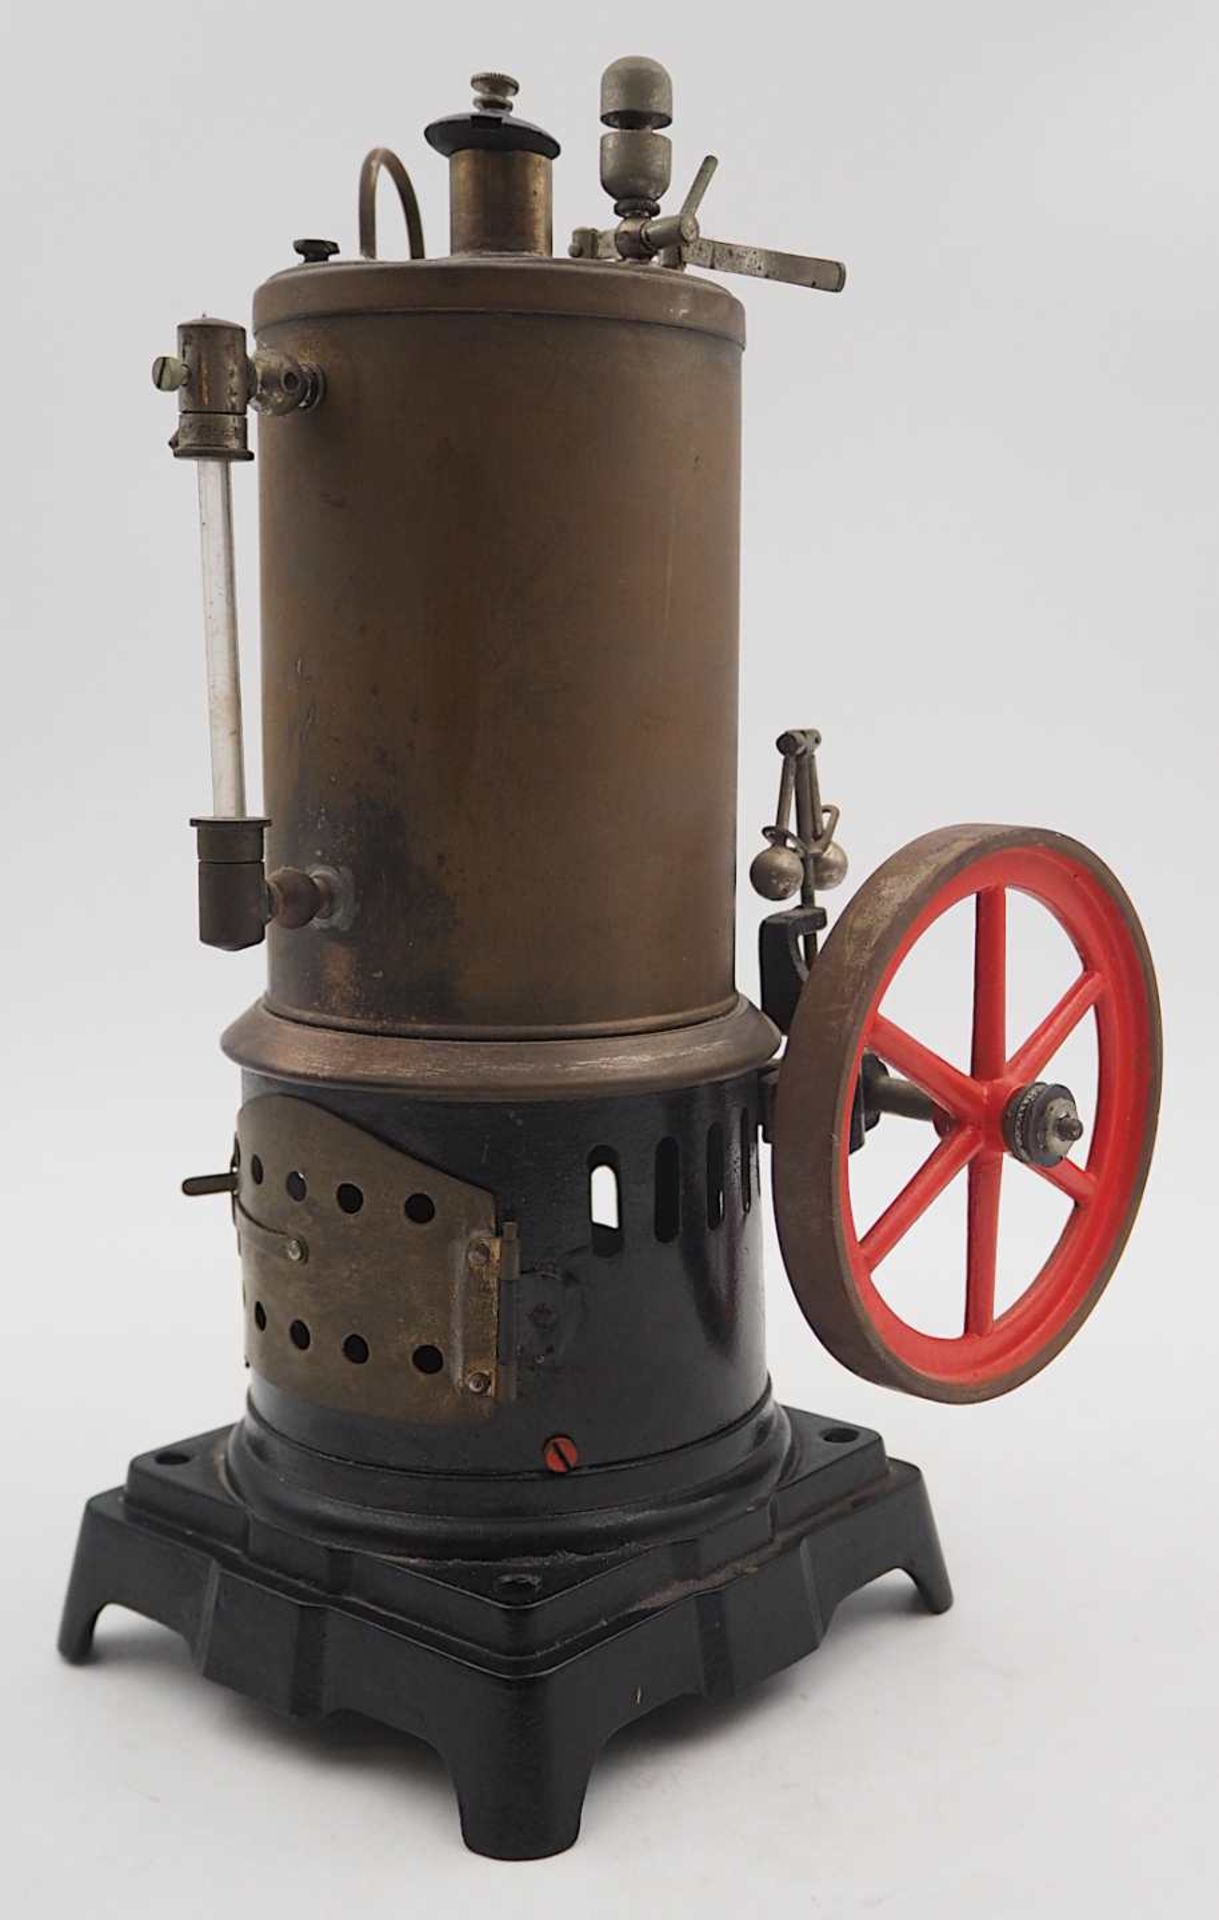 1 Dampfmaschine wohl um 1900/1910, Metall/Messing mit Kocher, Schwungrad u.a., H ca. 2 - Bild 2 aus 3